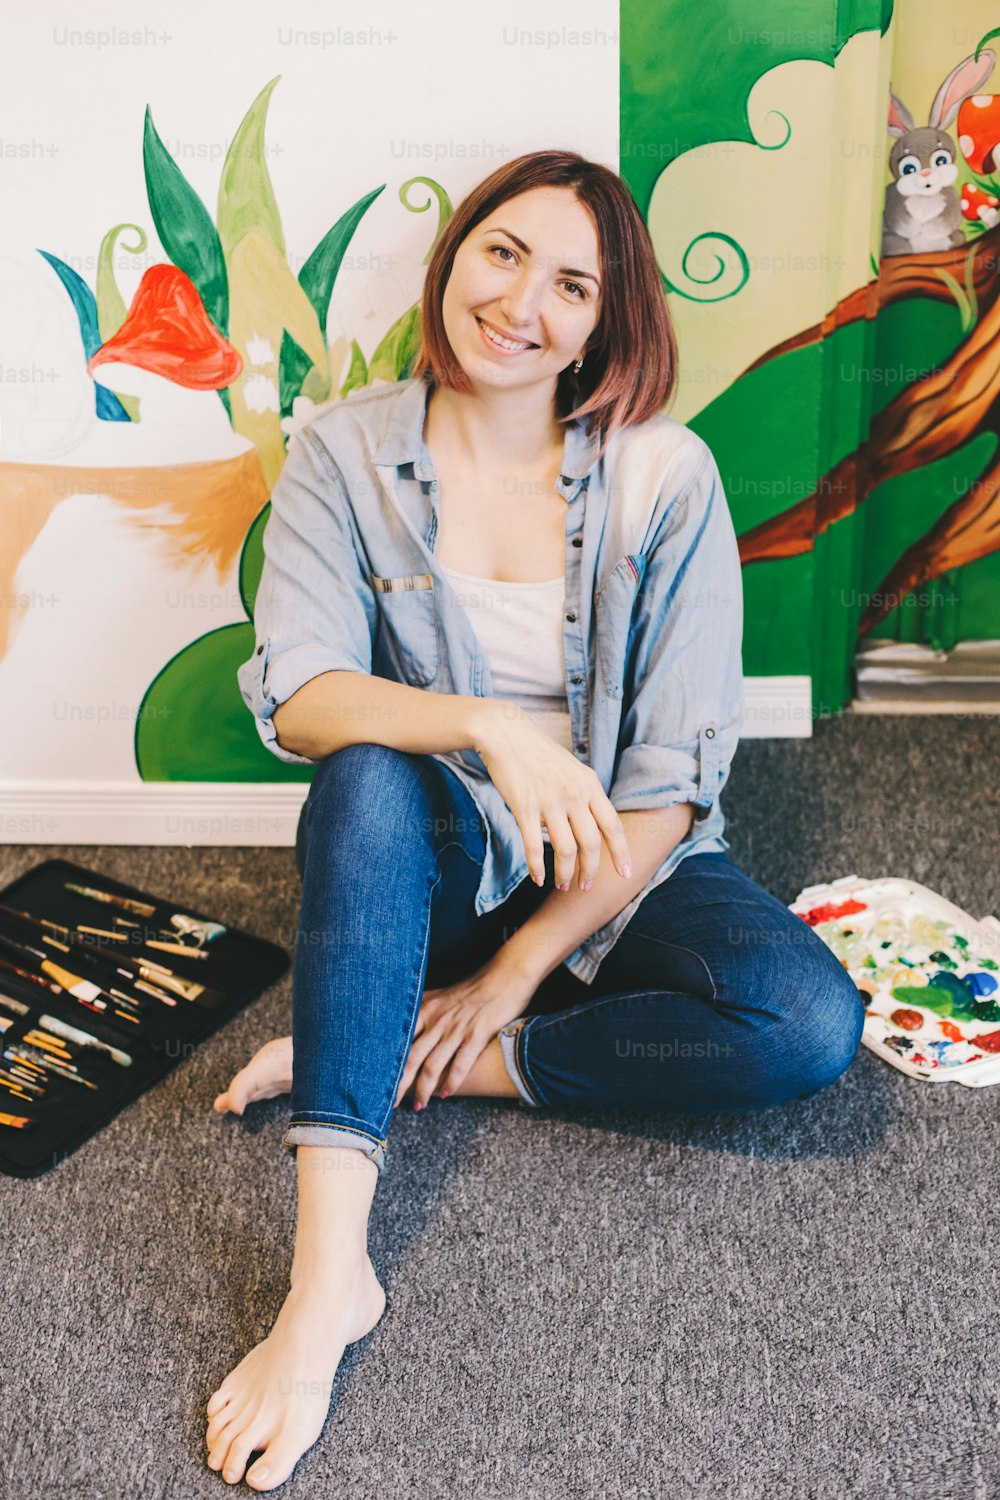 Artista donna caucasica che si rilassa dopo aver dipinto a mano murales sulle pareti all'interno di un appartamento o di una scuola studio con colori acrilici. Concetto di hobby creativo e lavoro artistico freelance.